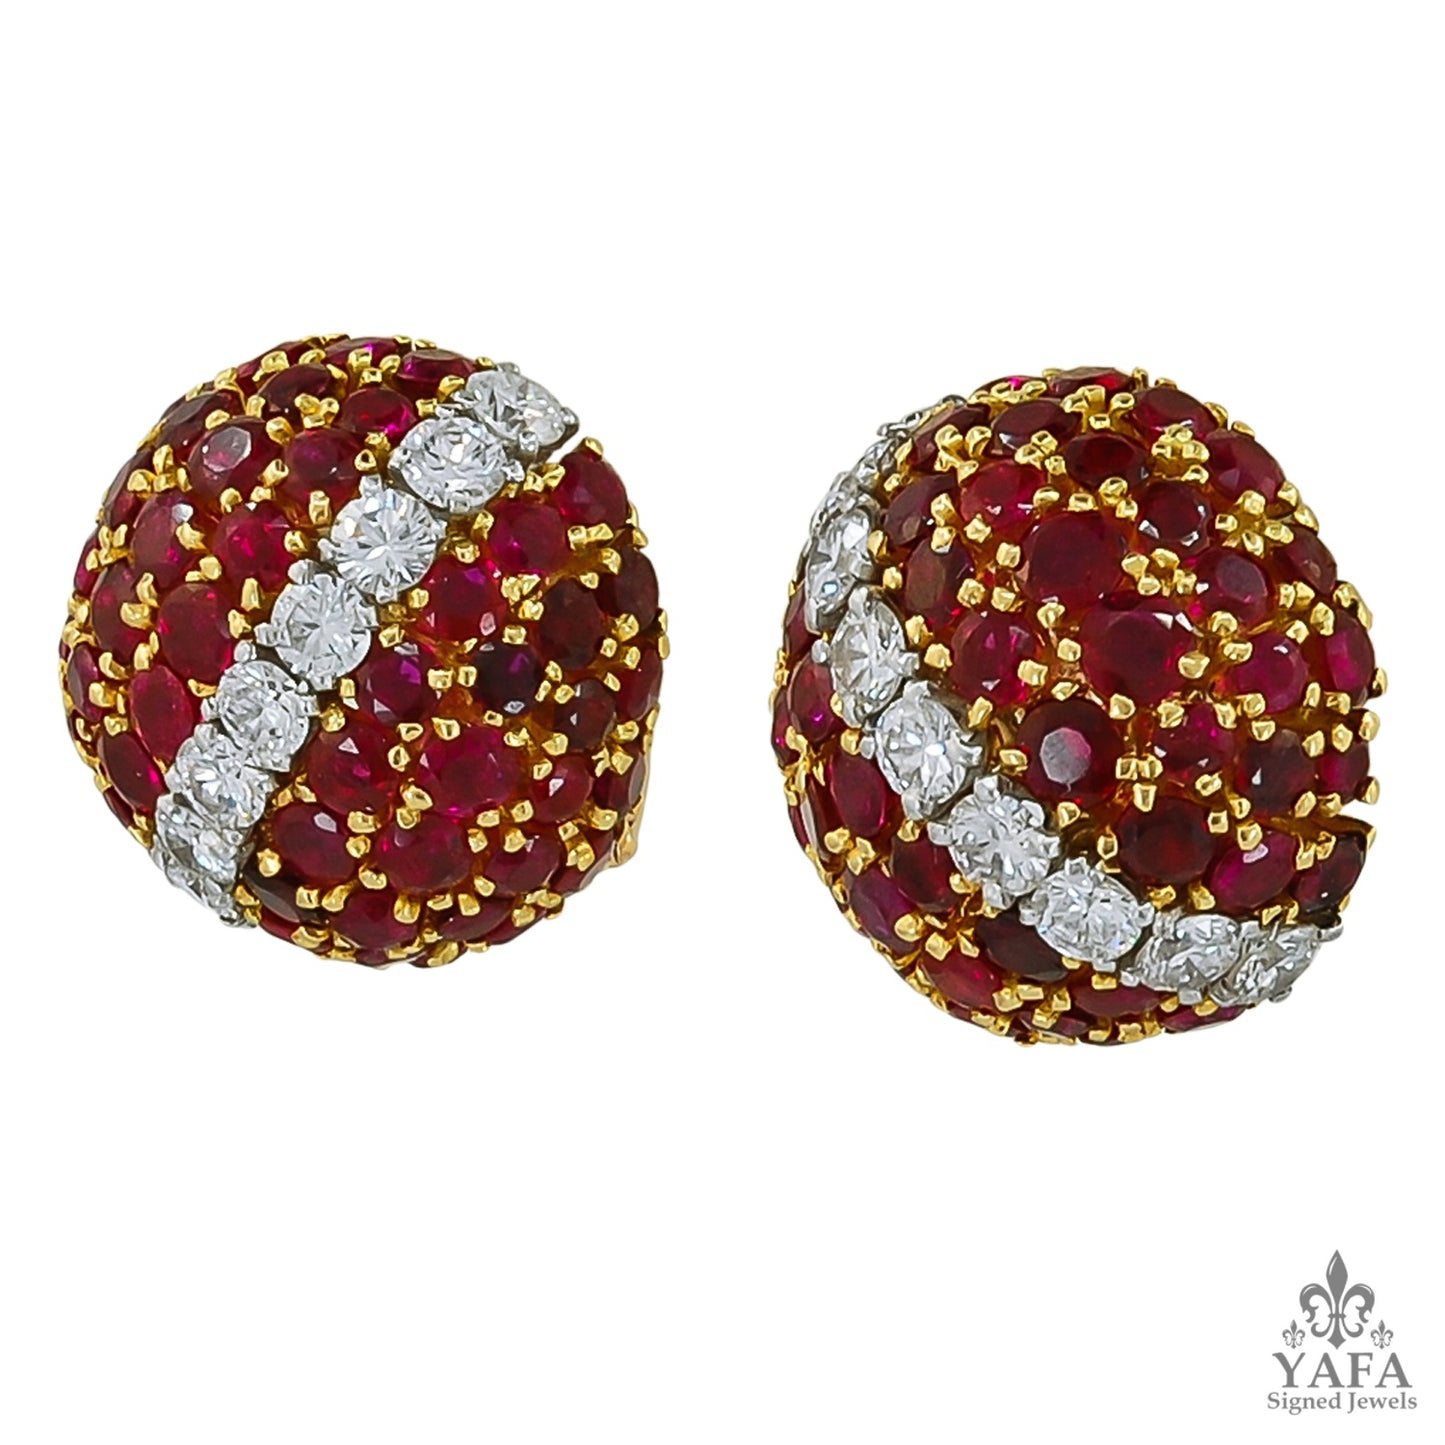 VAN CLEEF & ARPELS Province Ruby Bombe Earrings